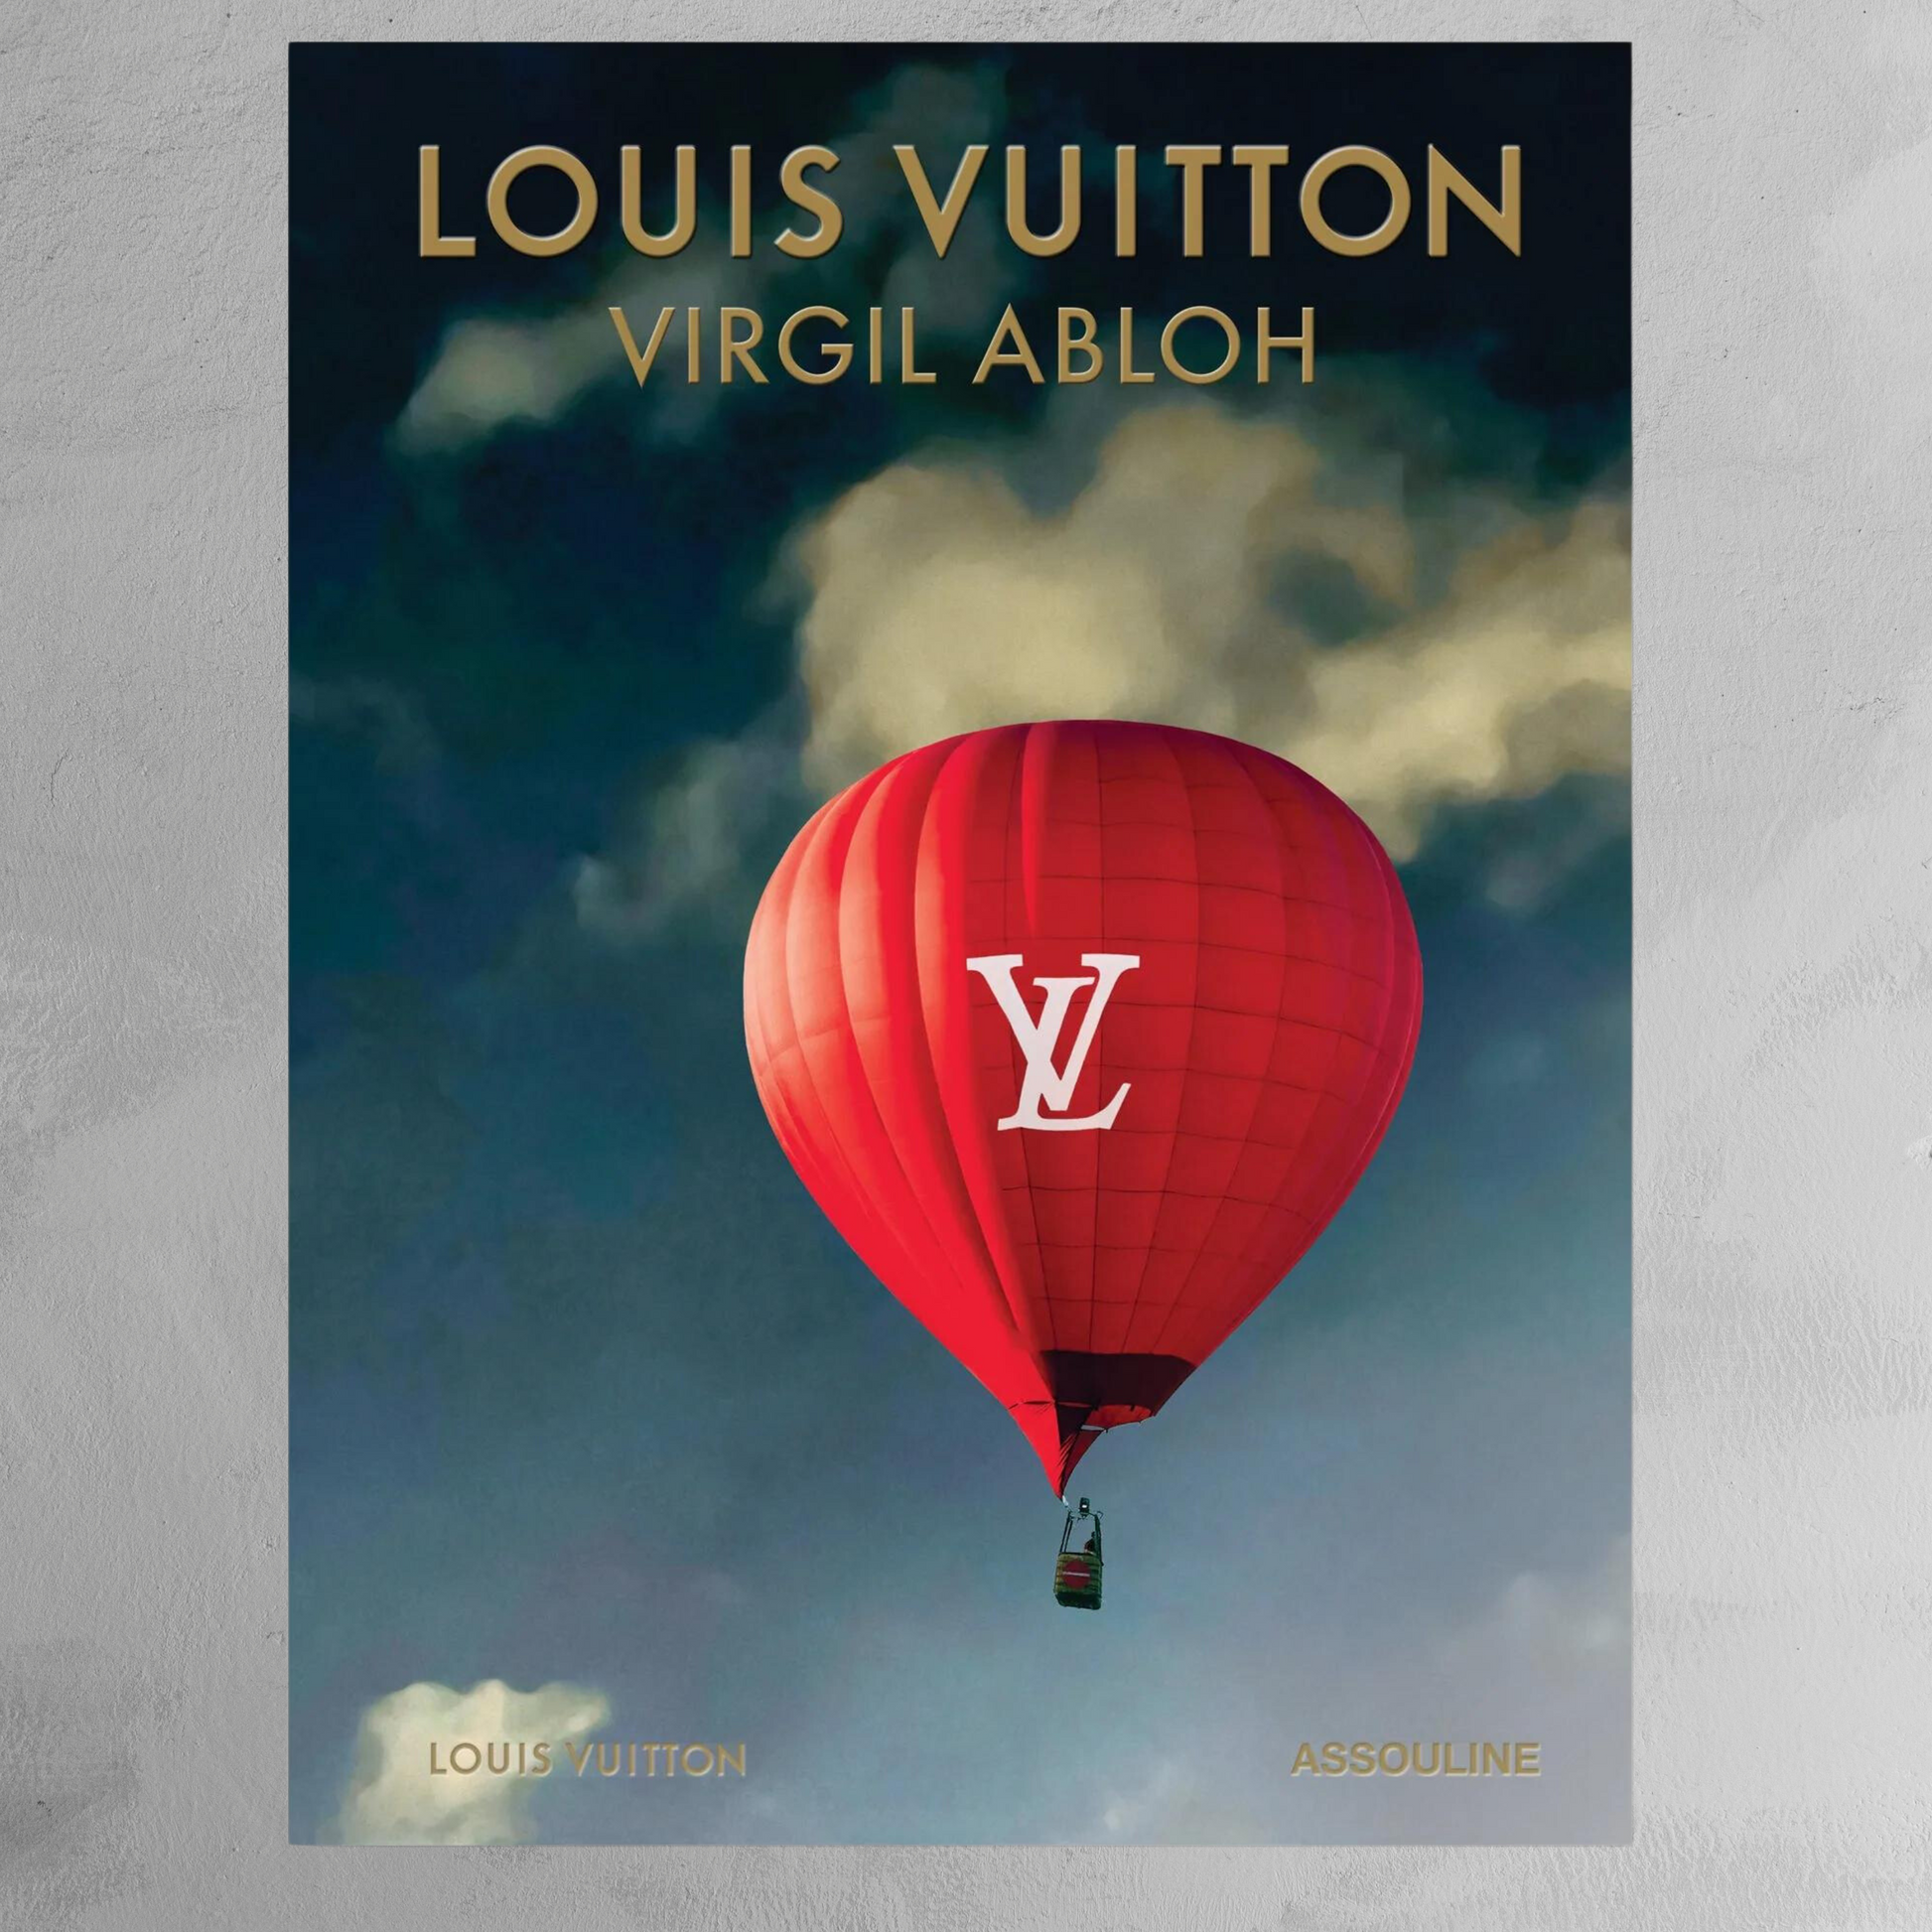 LOUIS VUITTON book cover